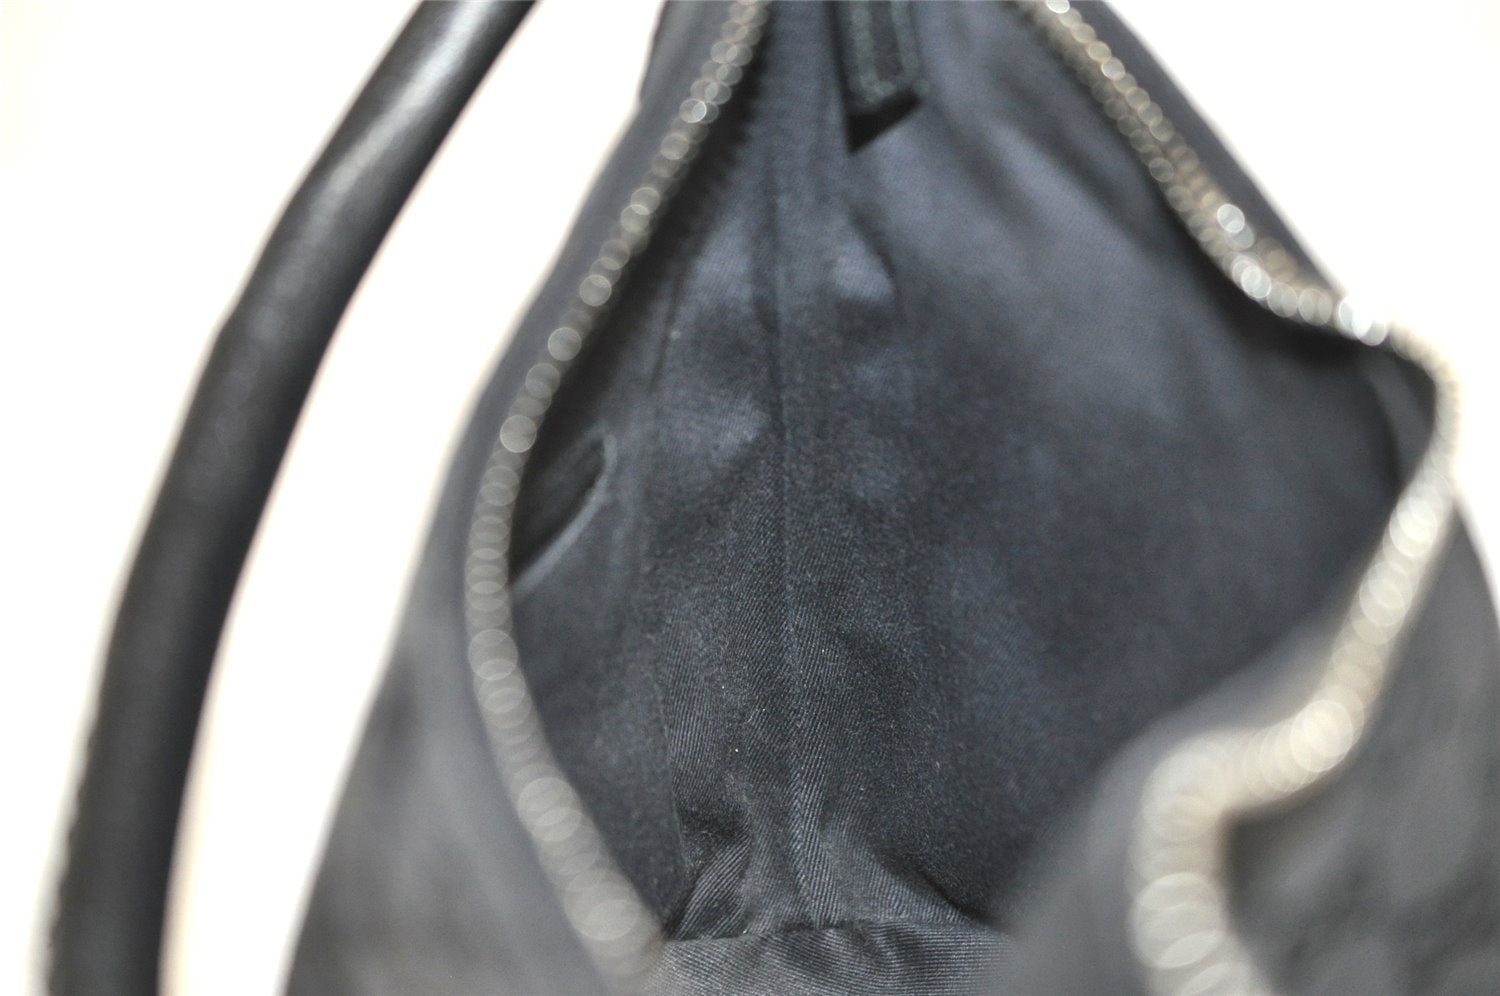 Authentic GUCCI Vintage Shoulder Bag Purse GG Canvas Leather 115002 Black 9534J